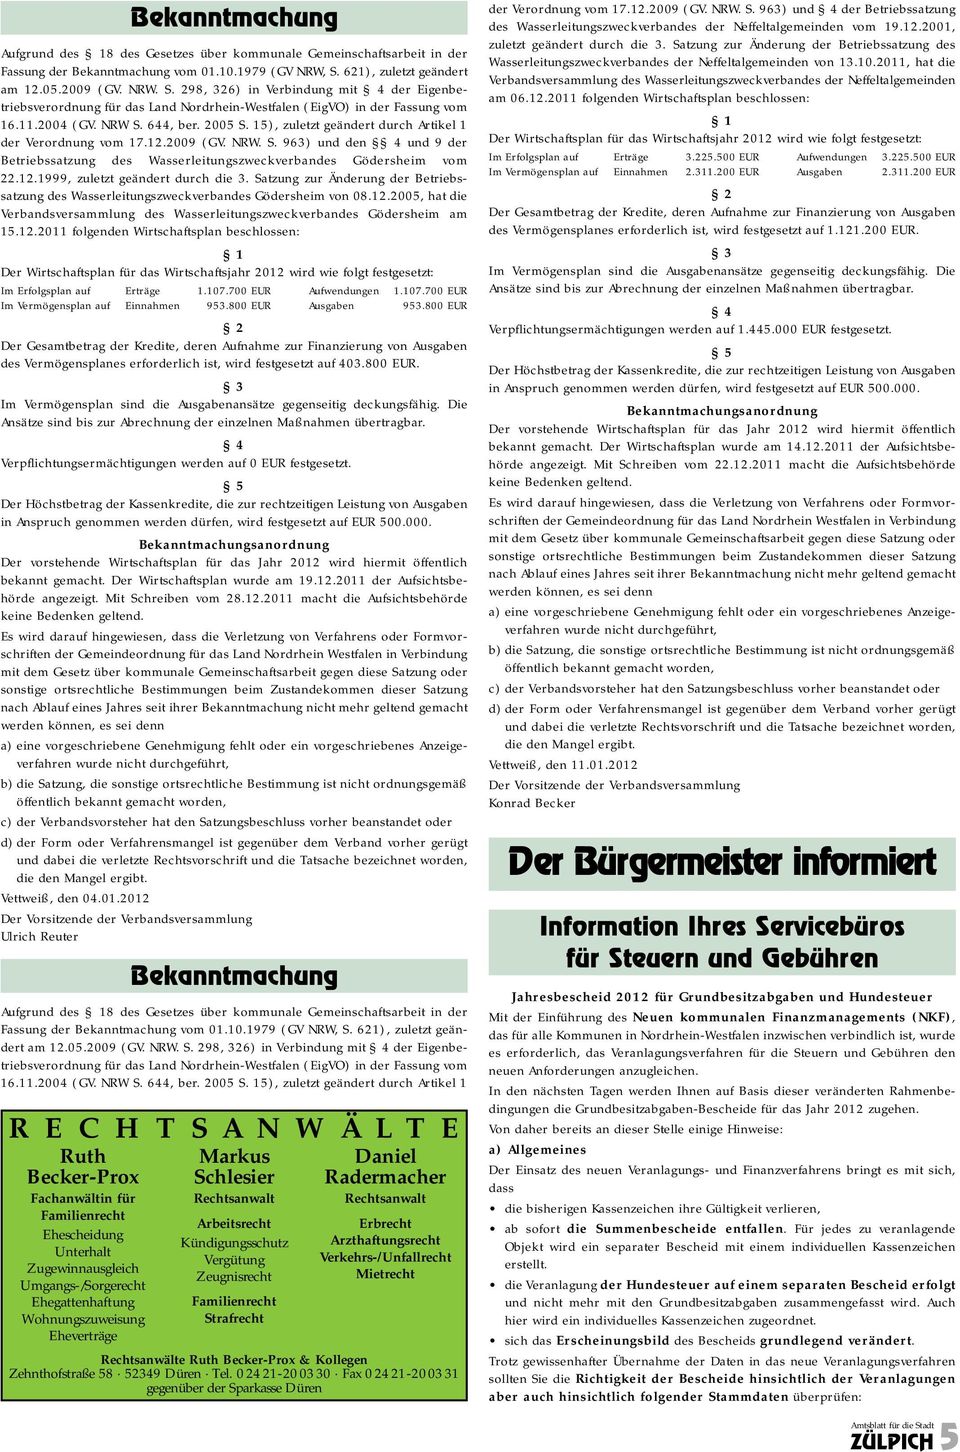 2005 S. 15), zuletzt geändert durch Artikel 1 der Verordnung vom 17.12.2009 (GV. NRW. S. 963) und den 4 und 9 der Betriebssatzung des Wasserleitungszweckverbandes Gödersheim vom 22.12.1999, zuletzt geändert durch die 3.